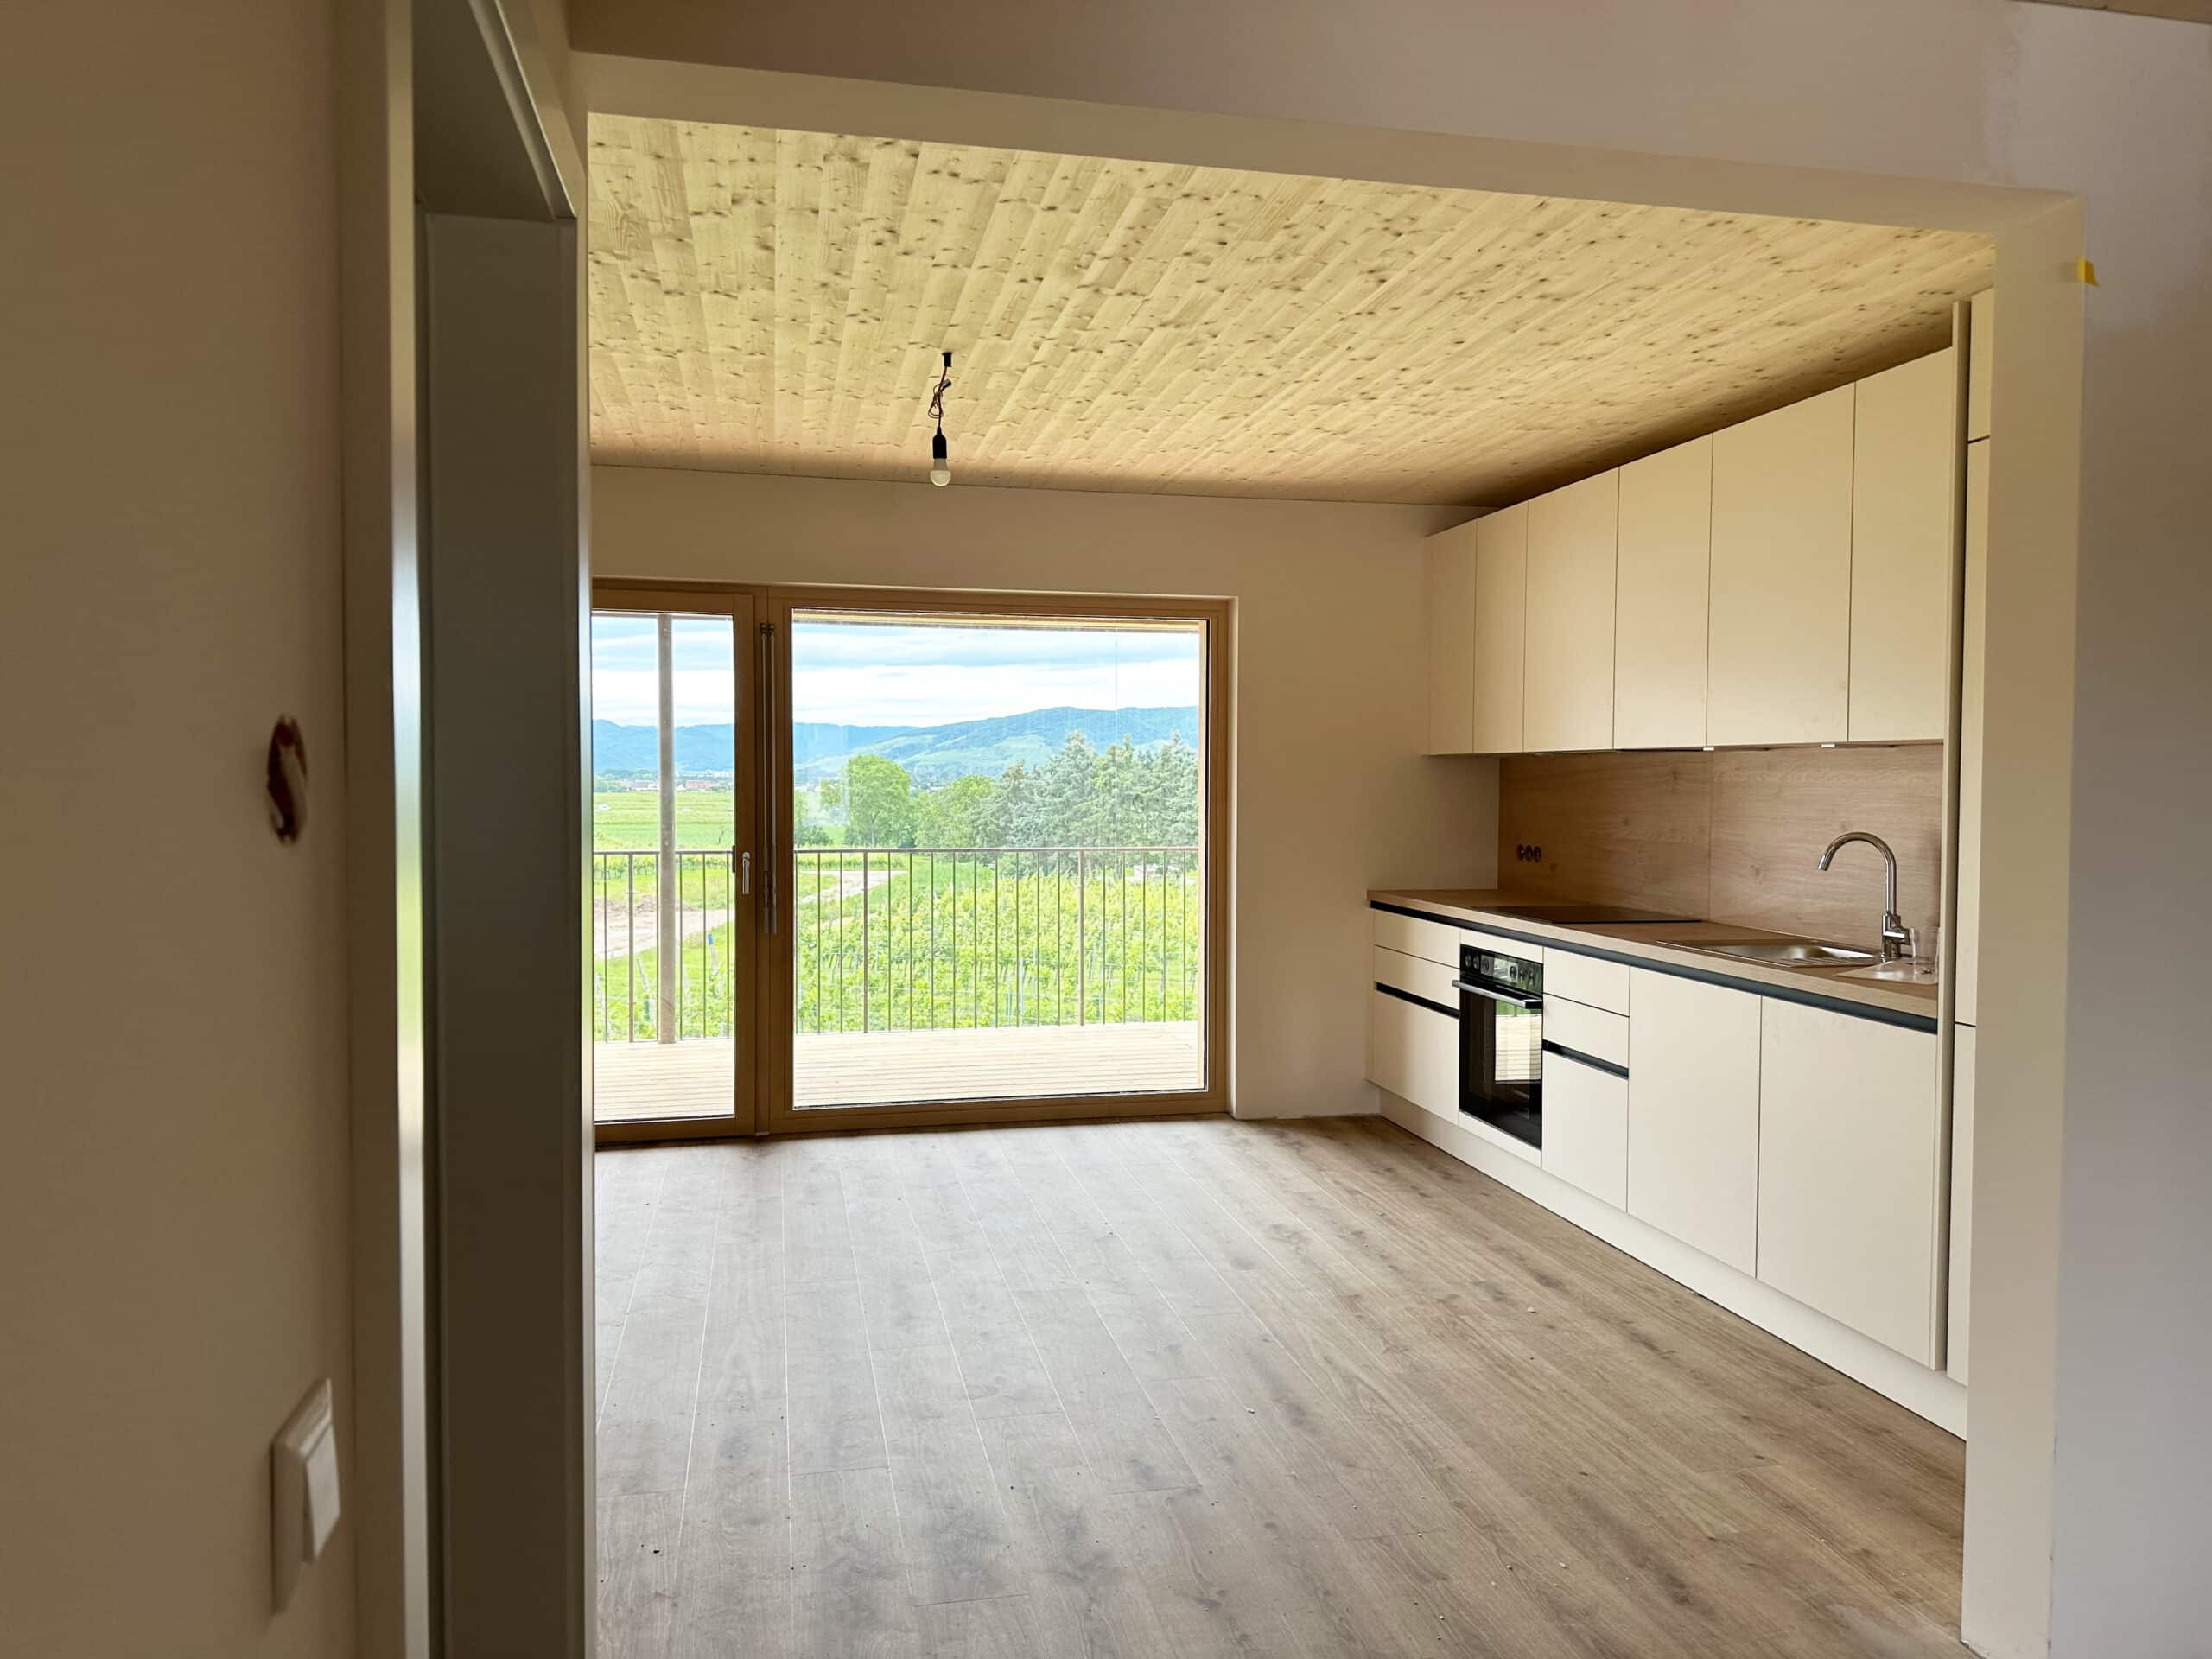 Einbauküche mit weißen Fronten und Holzrückwand in einer Wohnung in einem Massivholzbau. Architektur